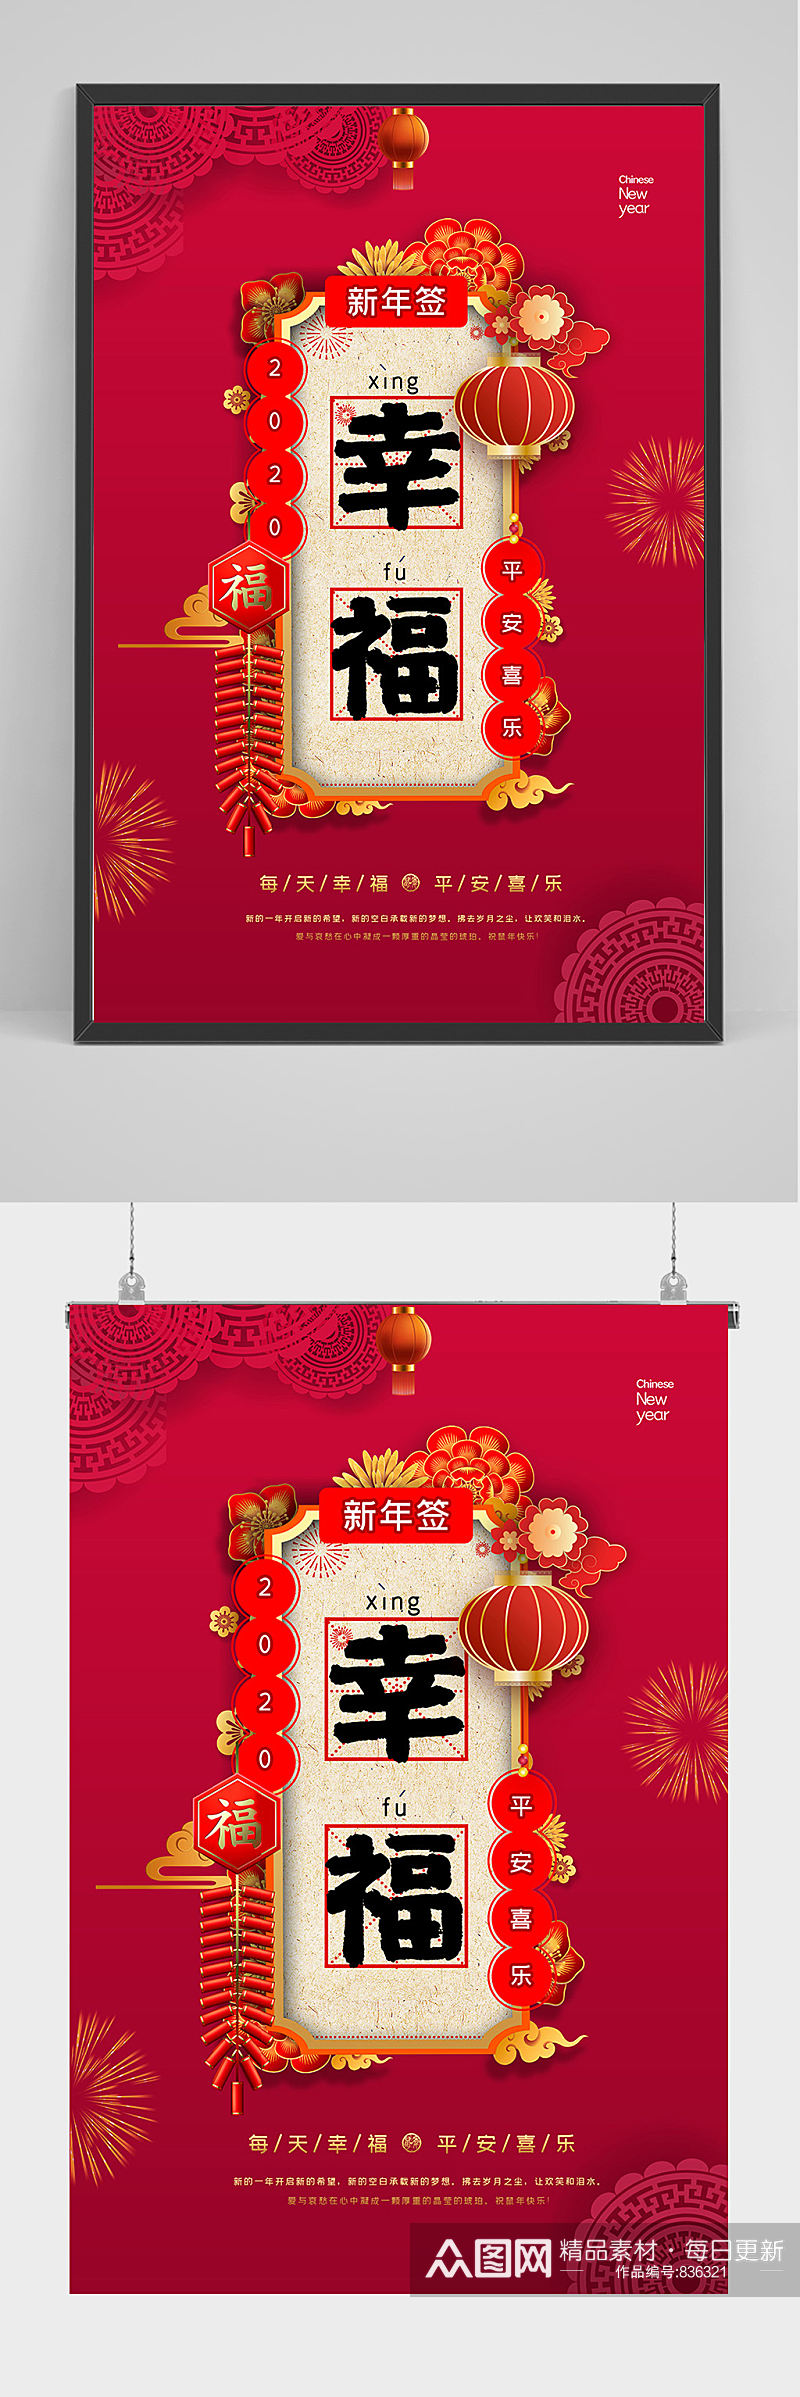 红色新年幸福海报设计素材